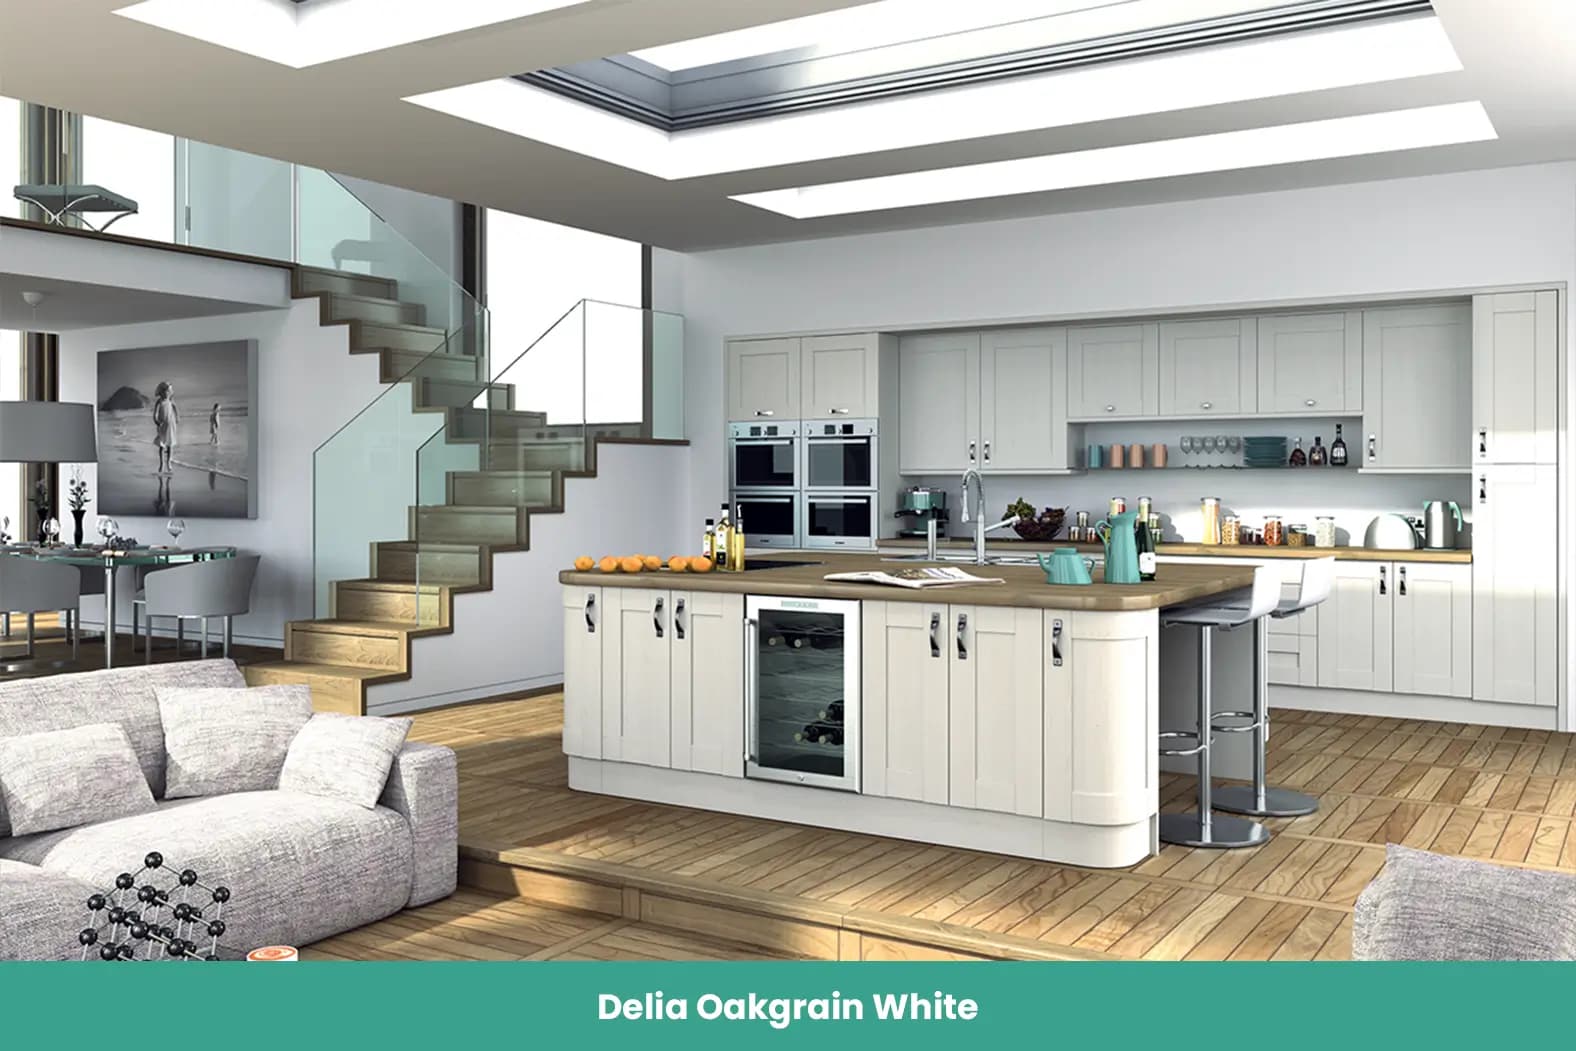 Delia Oakgrain White Kitchen